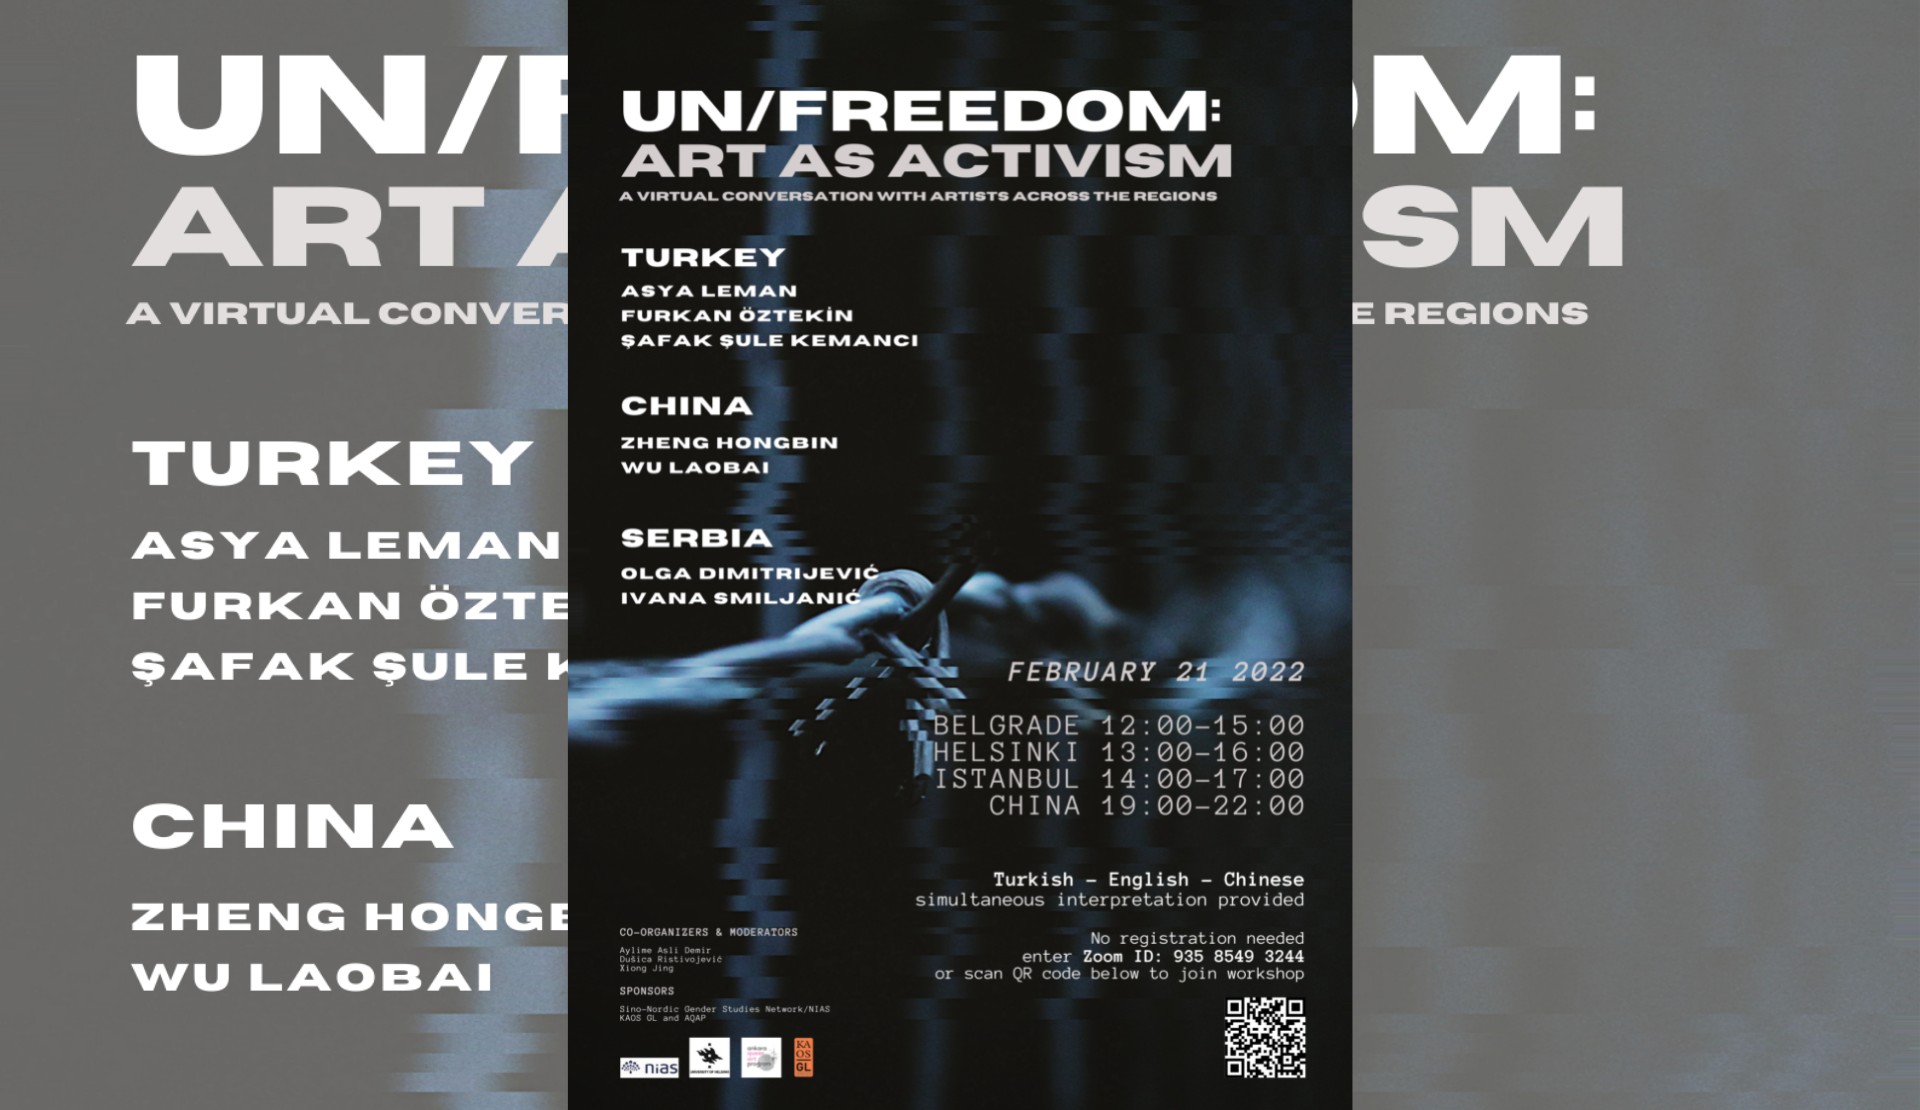 Çin, Sırbistan ve Türkiye’den sanatçılarla aktivizm olarak sanat Kaos GL - LGBTİ+ Haber Portalı